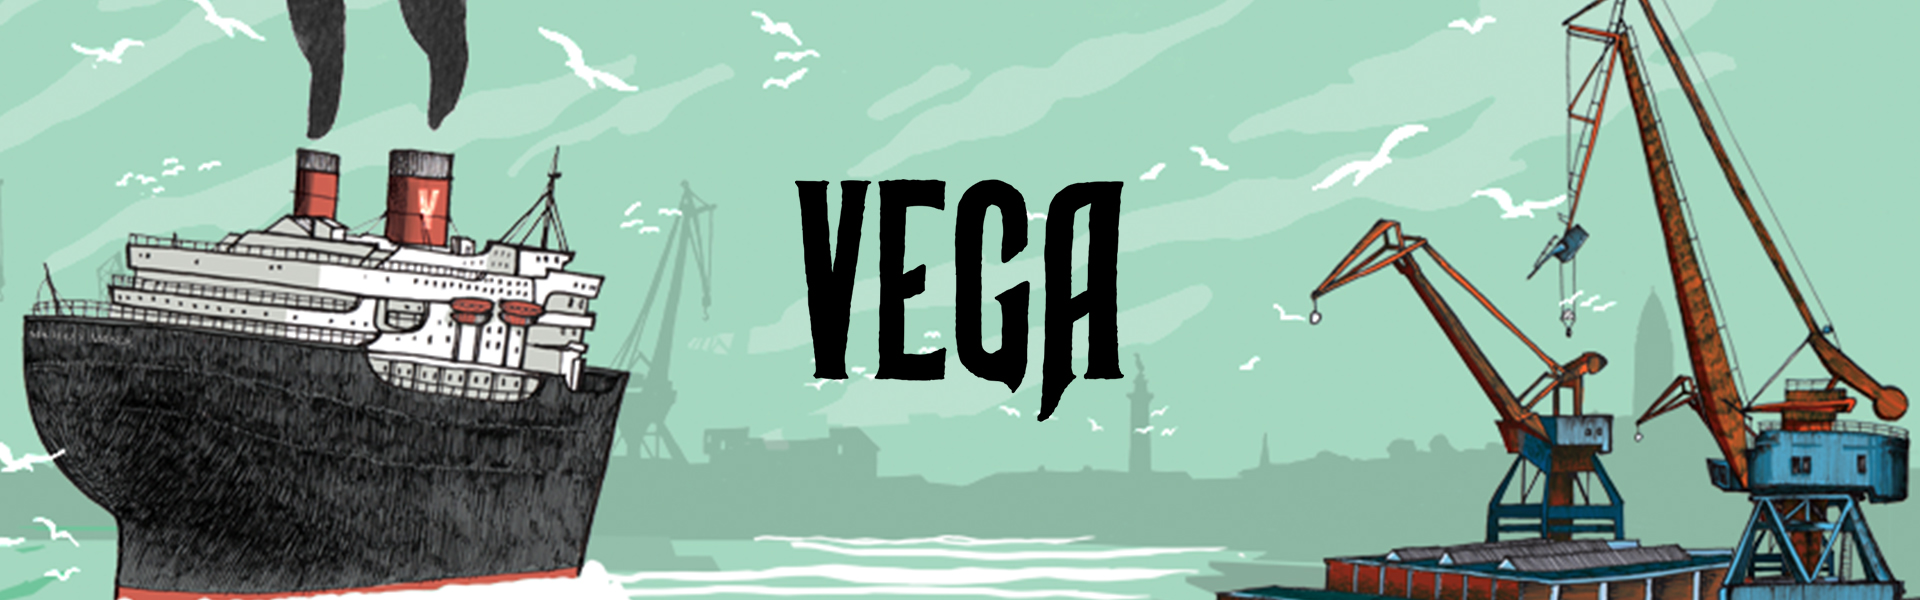 Vega Bryggeri